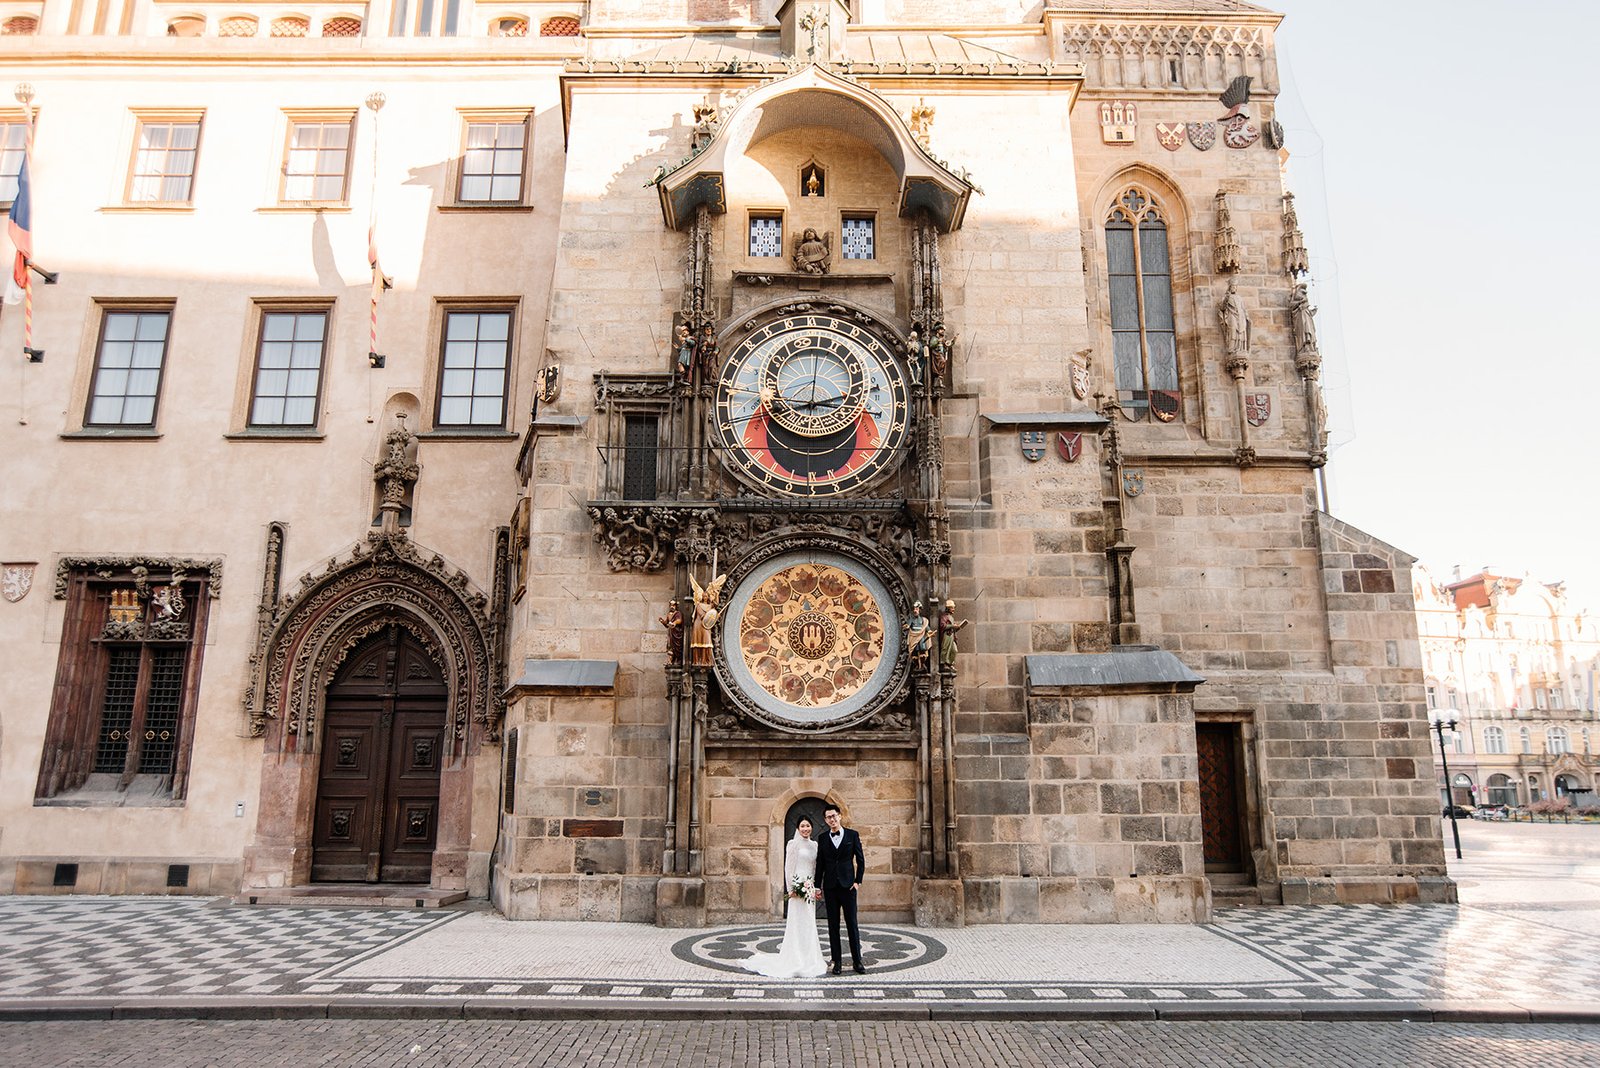 Свадебная фотосессия в Праге